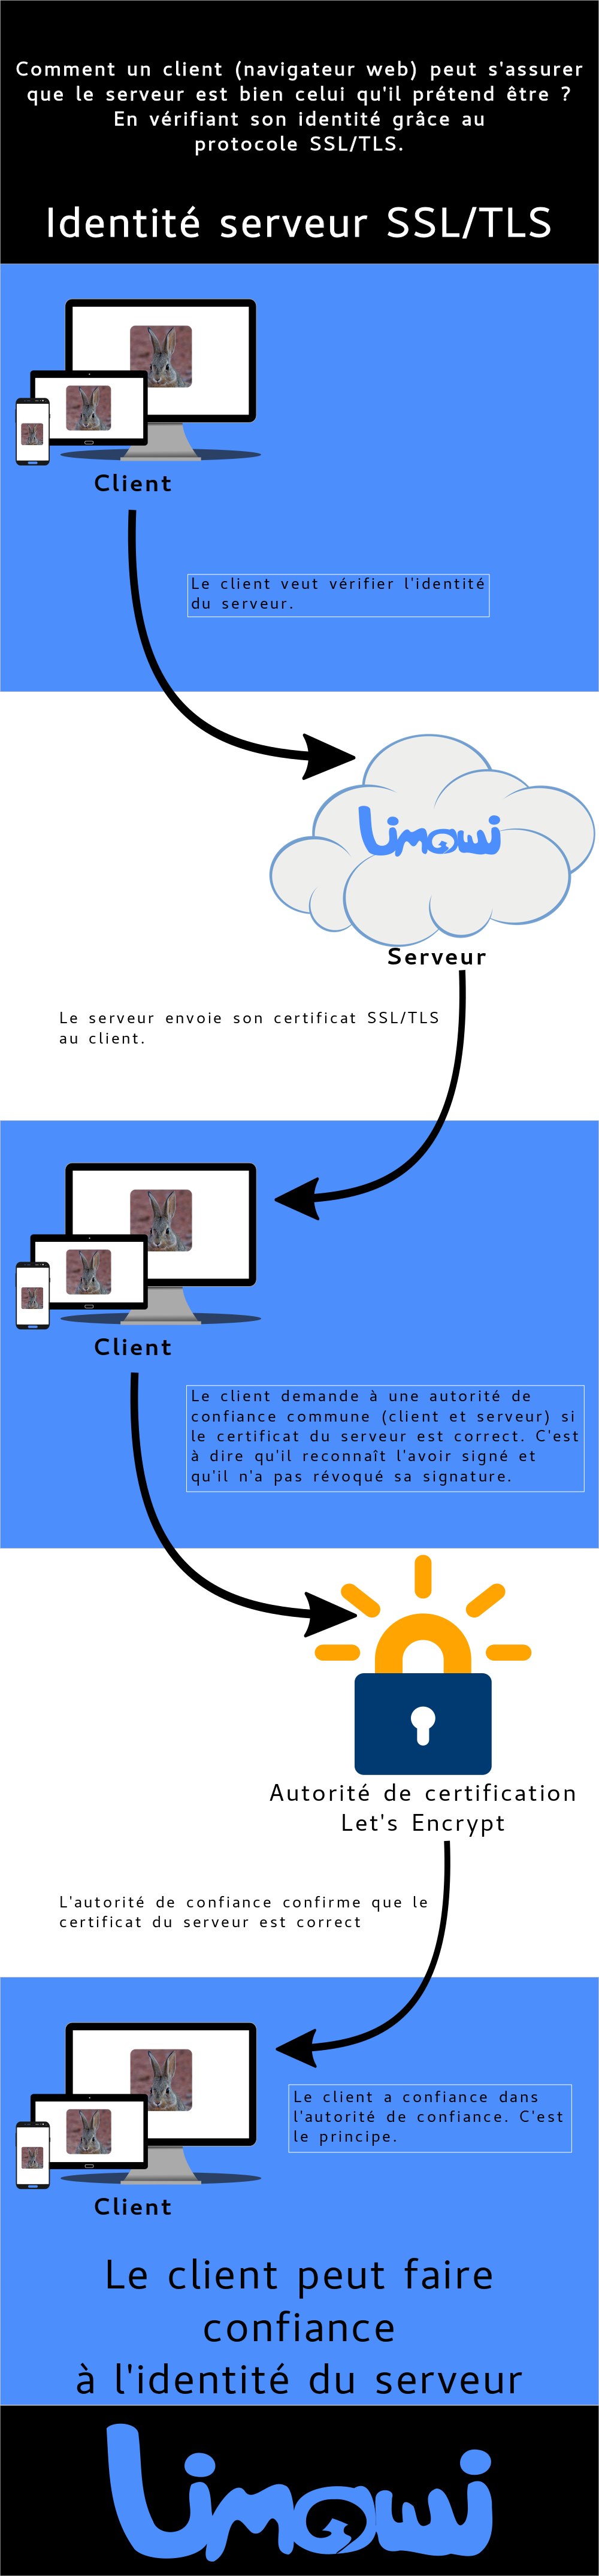 Diagramme affichant le flux d'identité SSL/TLS